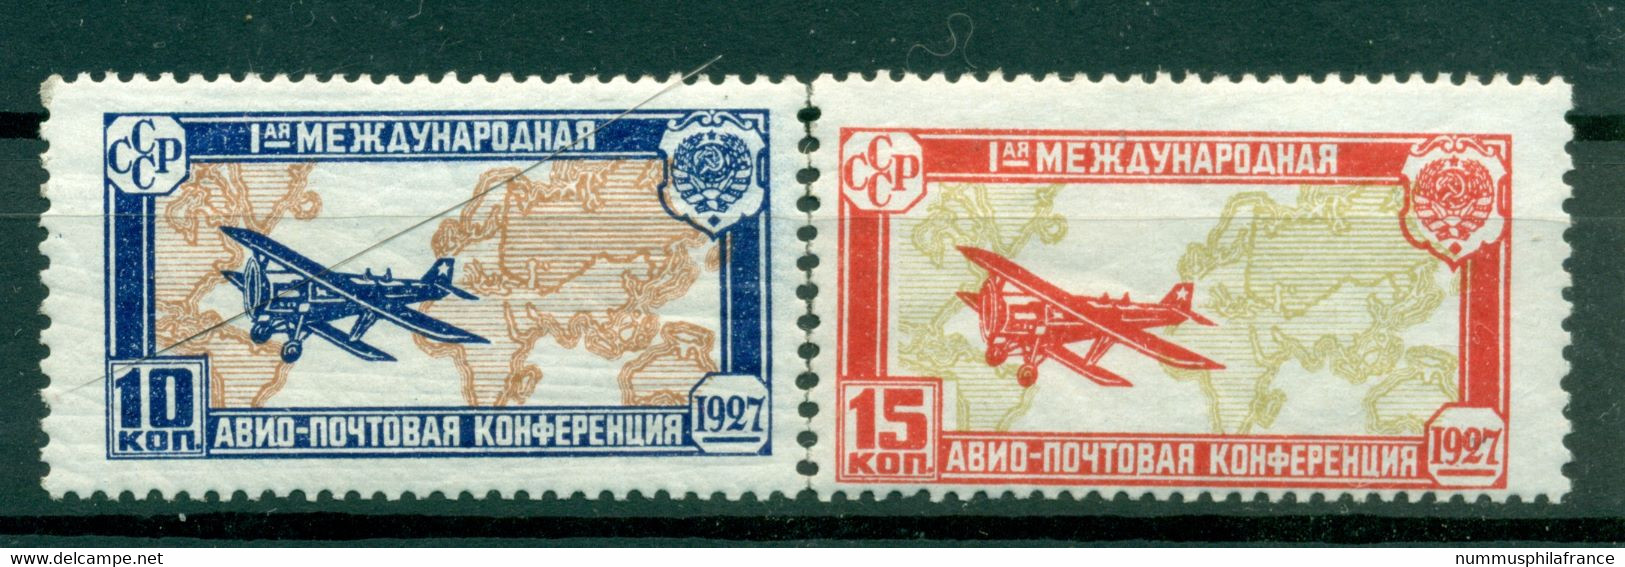 URSS 1927 - Michel N. 326/27 - Congrès De La Poste Aérienne ( Y & T N. 18/19 Poste Aérienne) - Ungebraucht